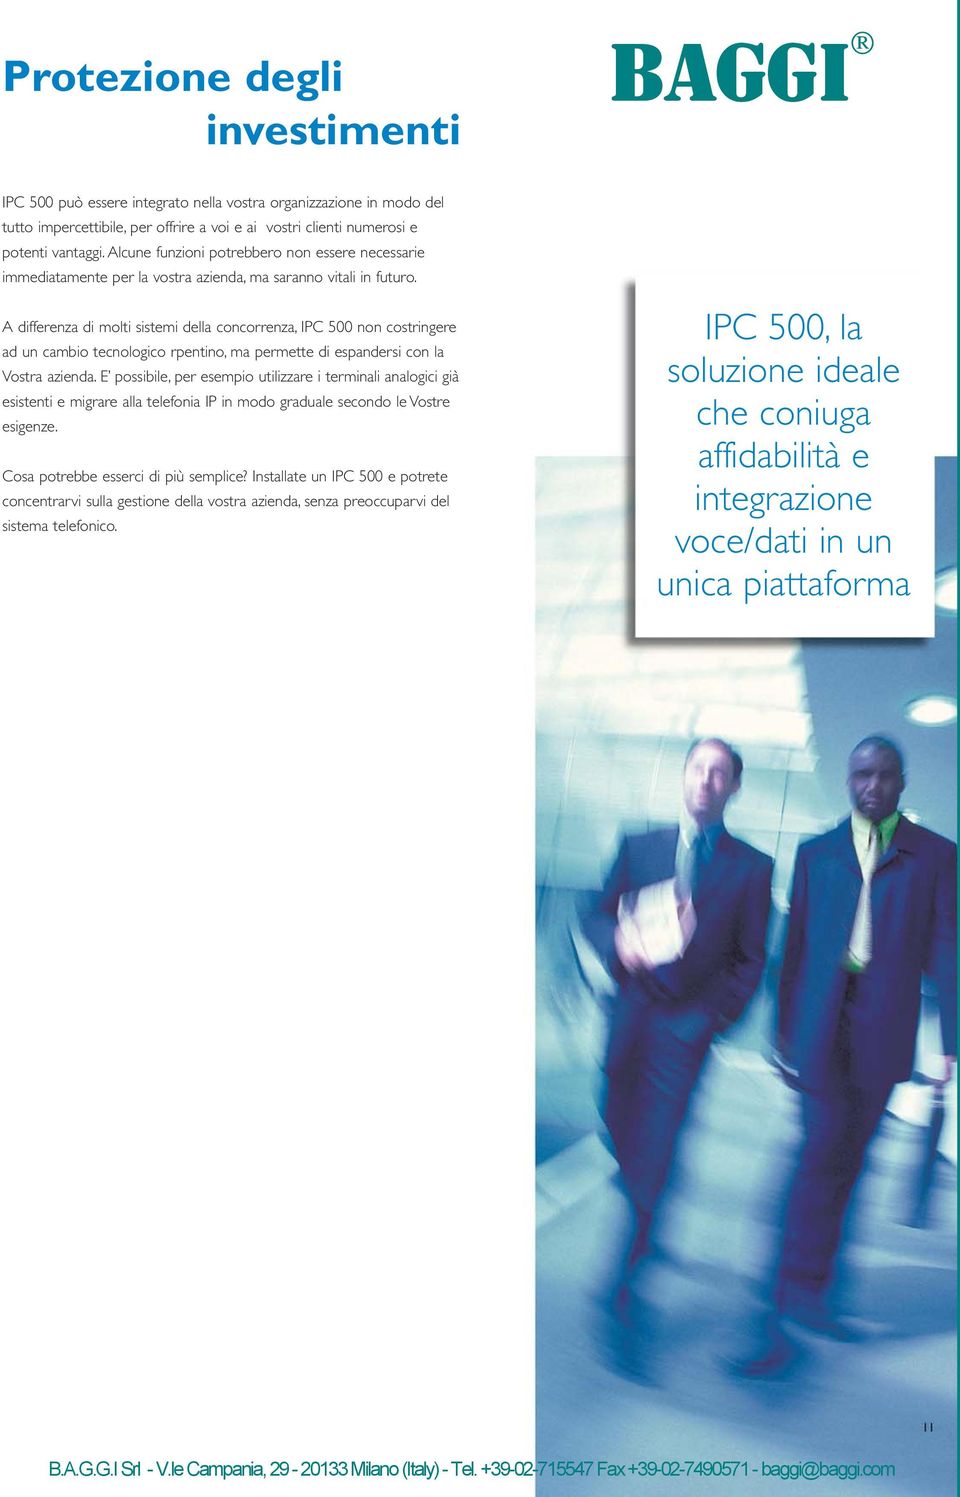 A differenza di molti sistemi della concorrenza, IPC 500 non costringere ad un cambio tecnologico rpentino, ma permette di espandersi con la Vostra azienda.